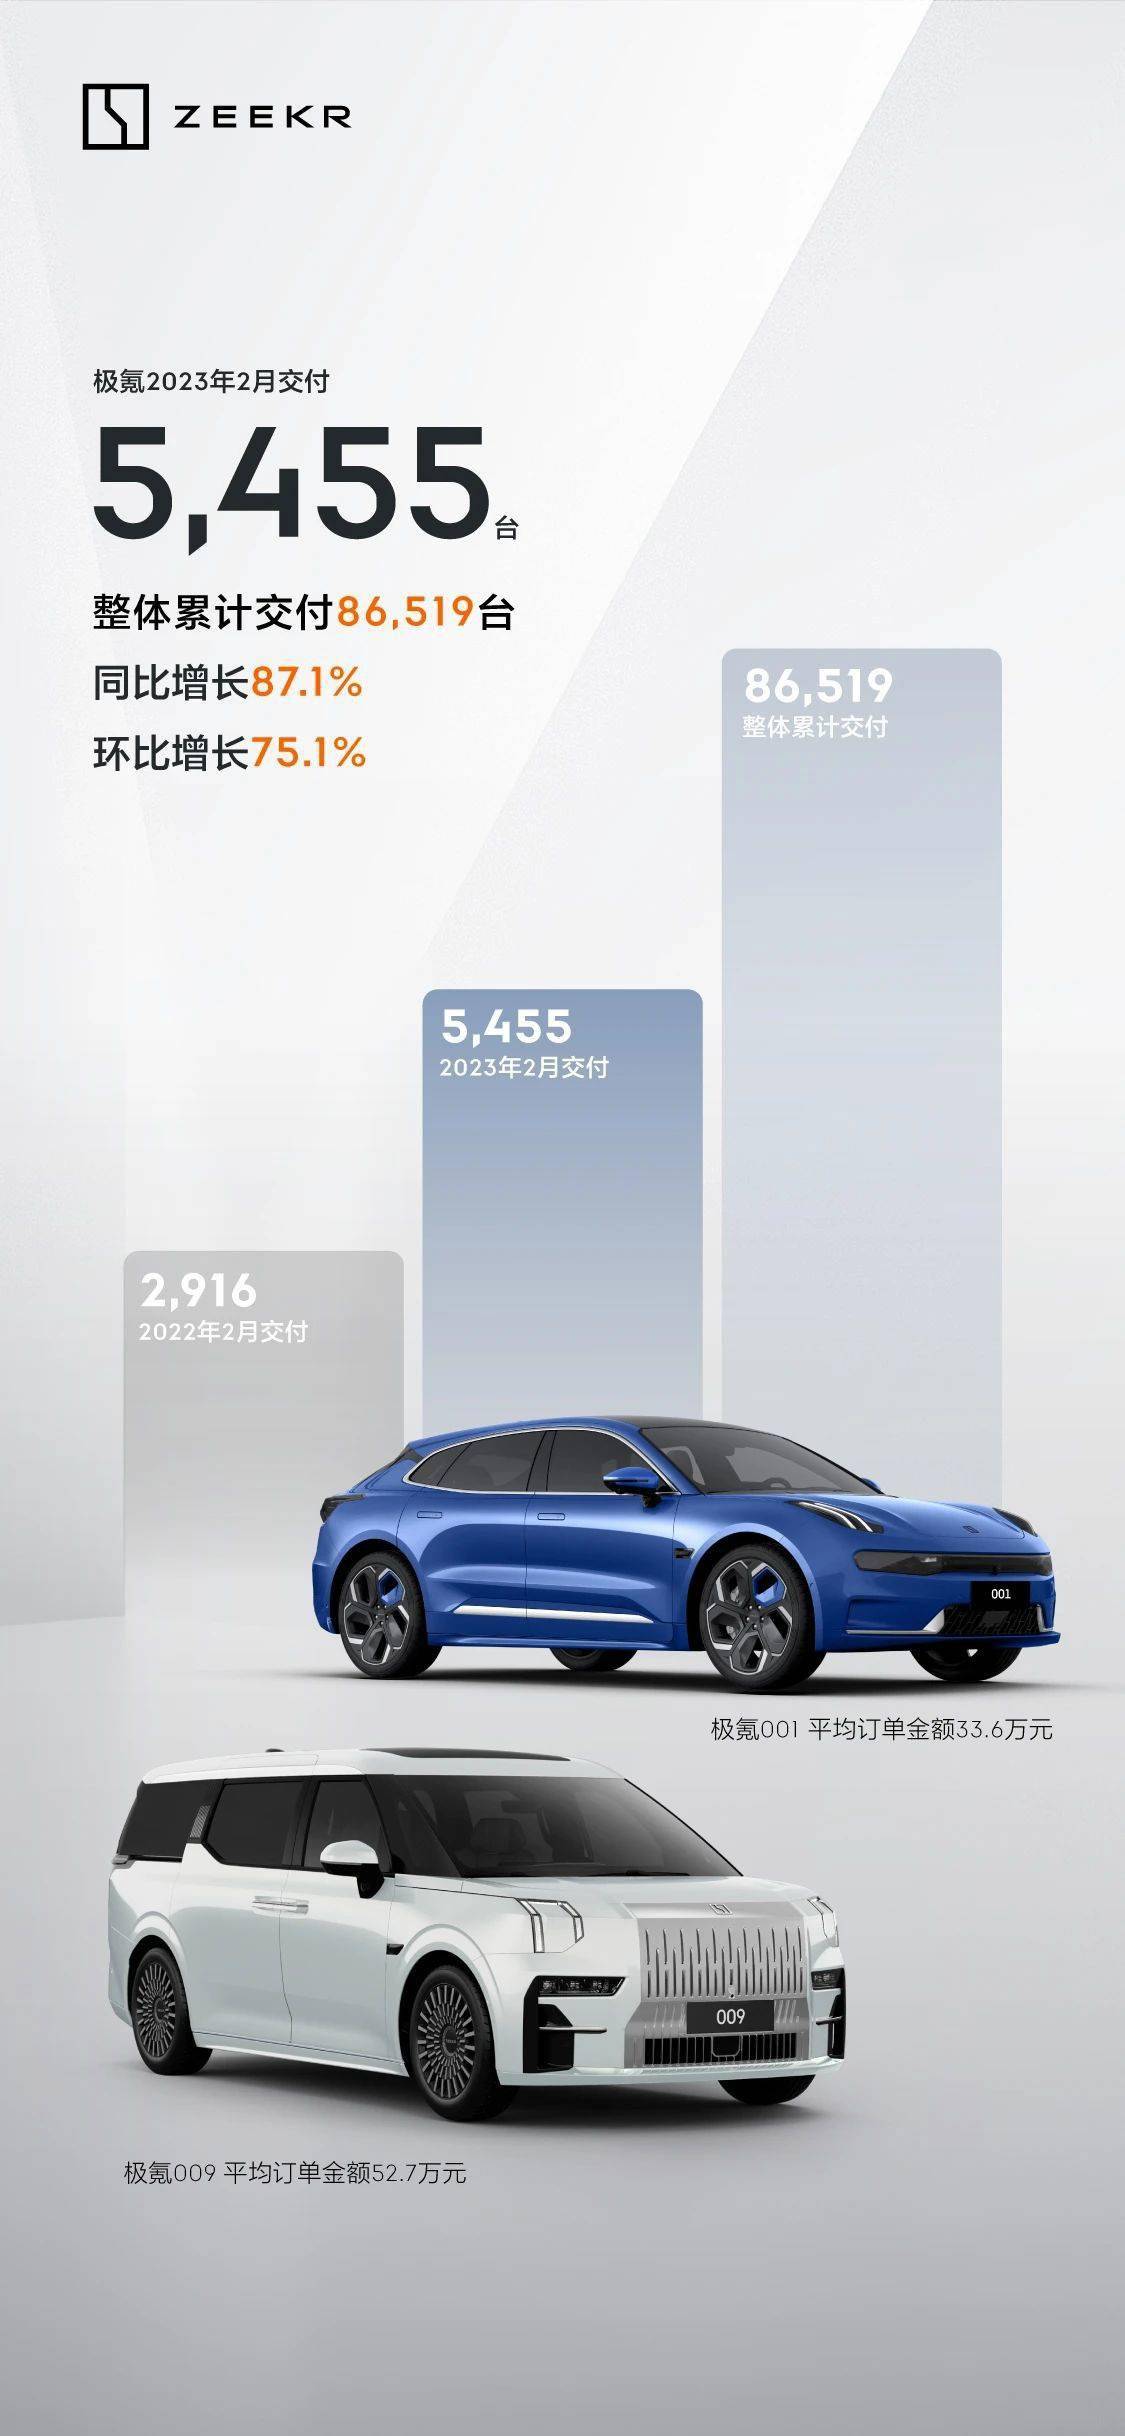 吉利汽车：极氪 2023年2 月交付汽车 5455 部   同比增长约 87%